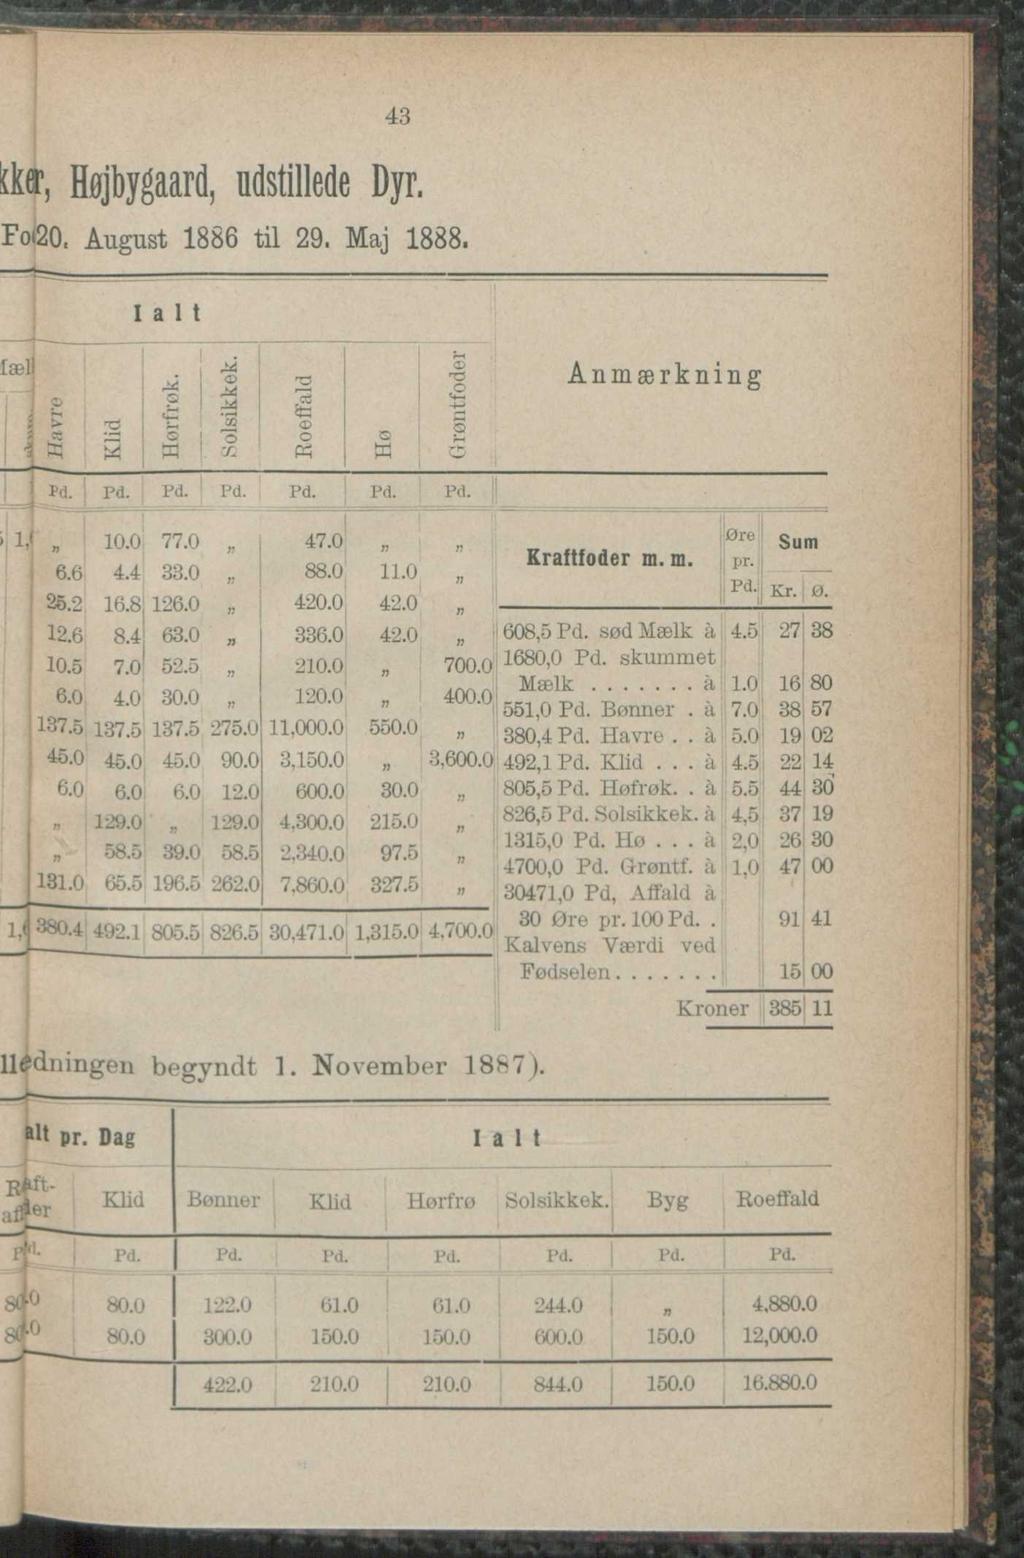 43 t o, Højbygaard, udstillede Dyr. Foi20, August 1886 til 29. Maj 1888. I a l t læl ij Klid Hørfrøk. Solsikkek. Roeffald Hø Pd. Pd. Pd. Pd. Pd. Pd. Pd. g 1 0.'i Anmærkning 6.6 25.2 12.6 10.5 6.0 4.